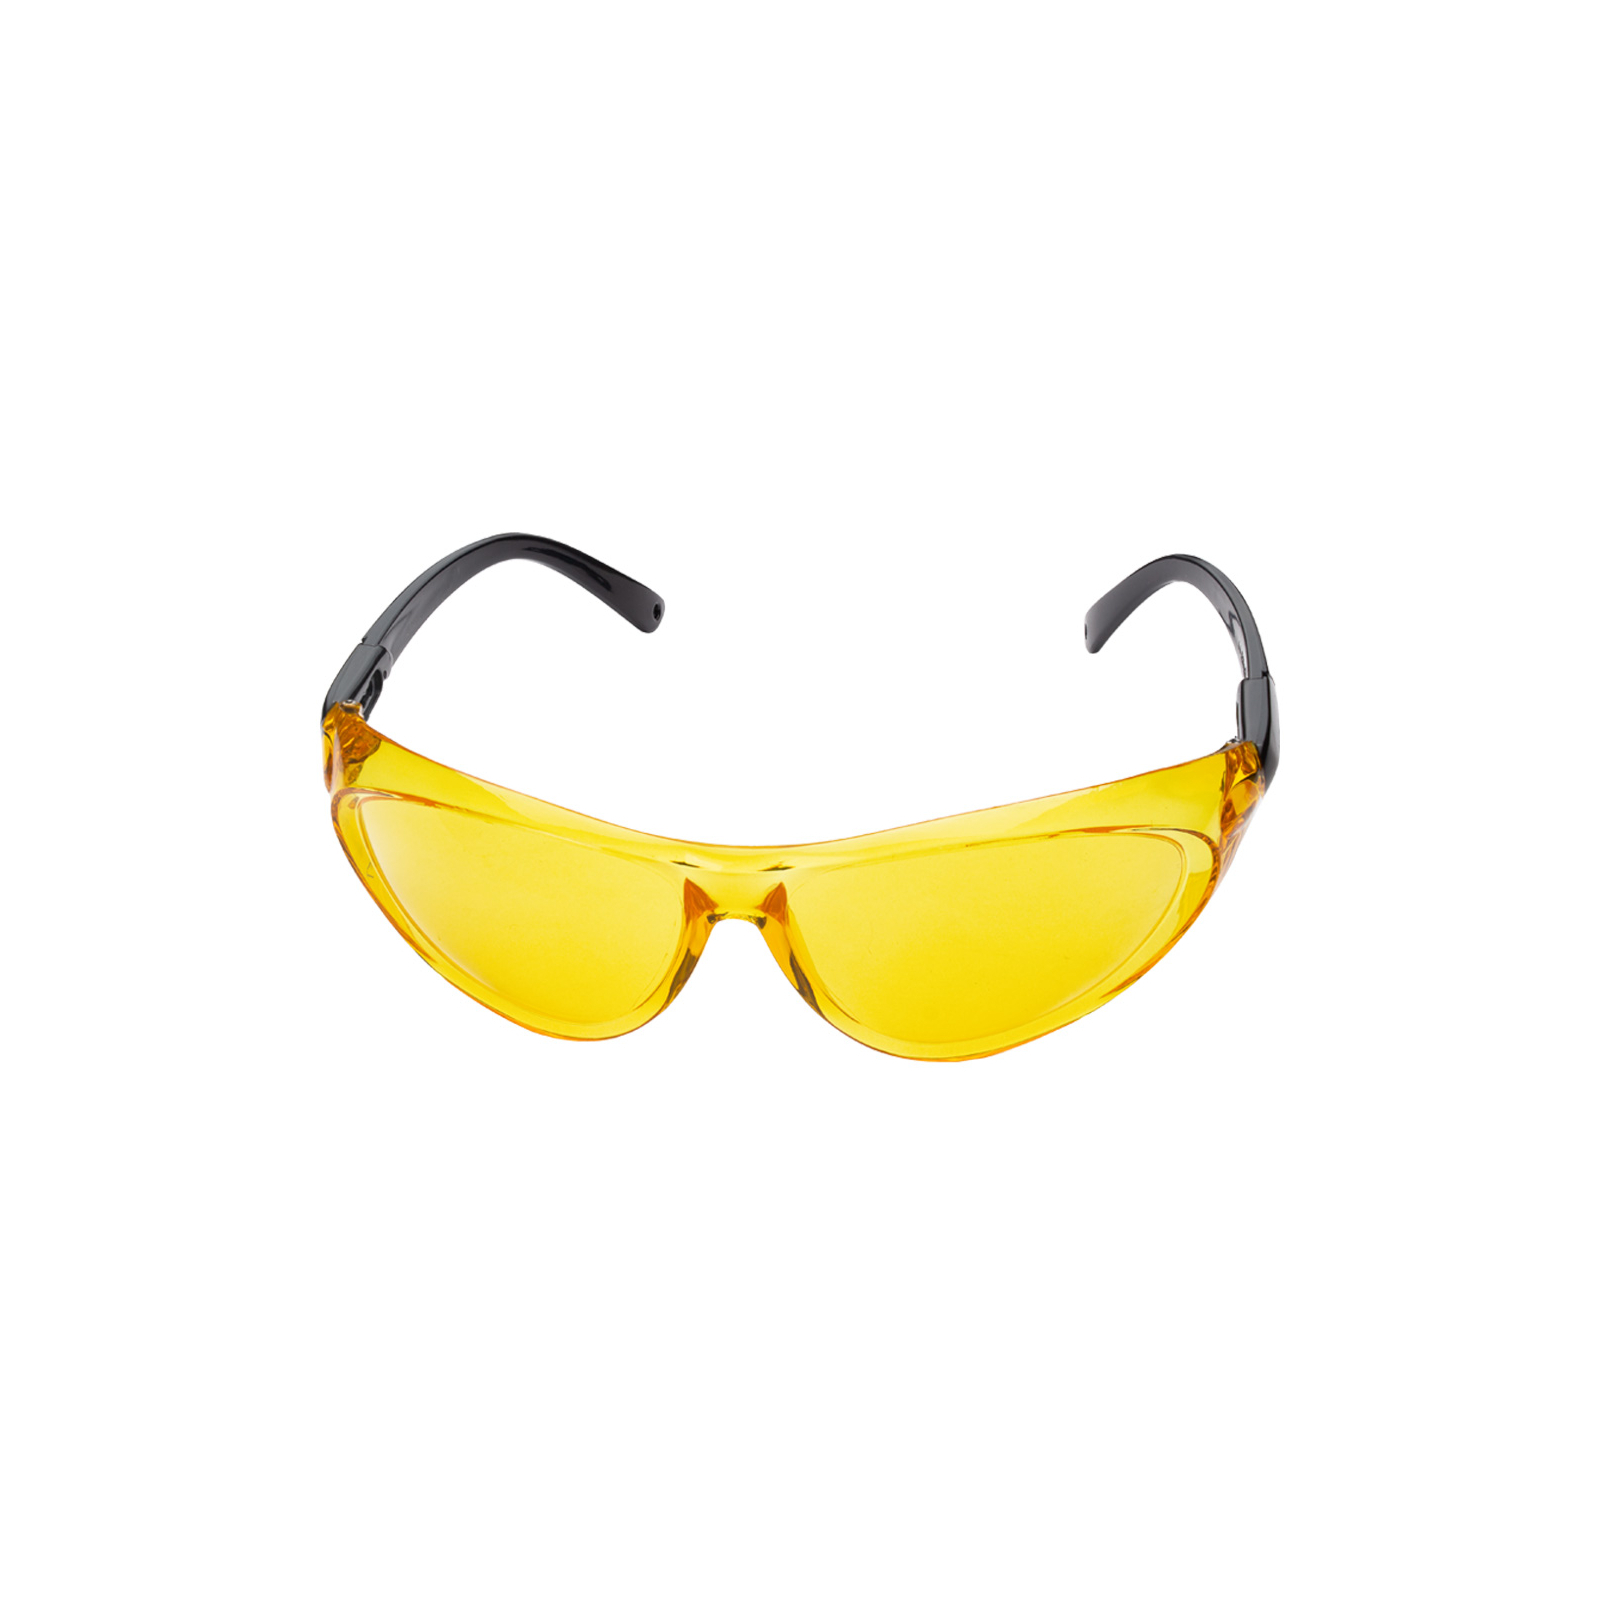 Защитные очки Sigma Python anti-scratch, прозрачные (9410621) изображение 3